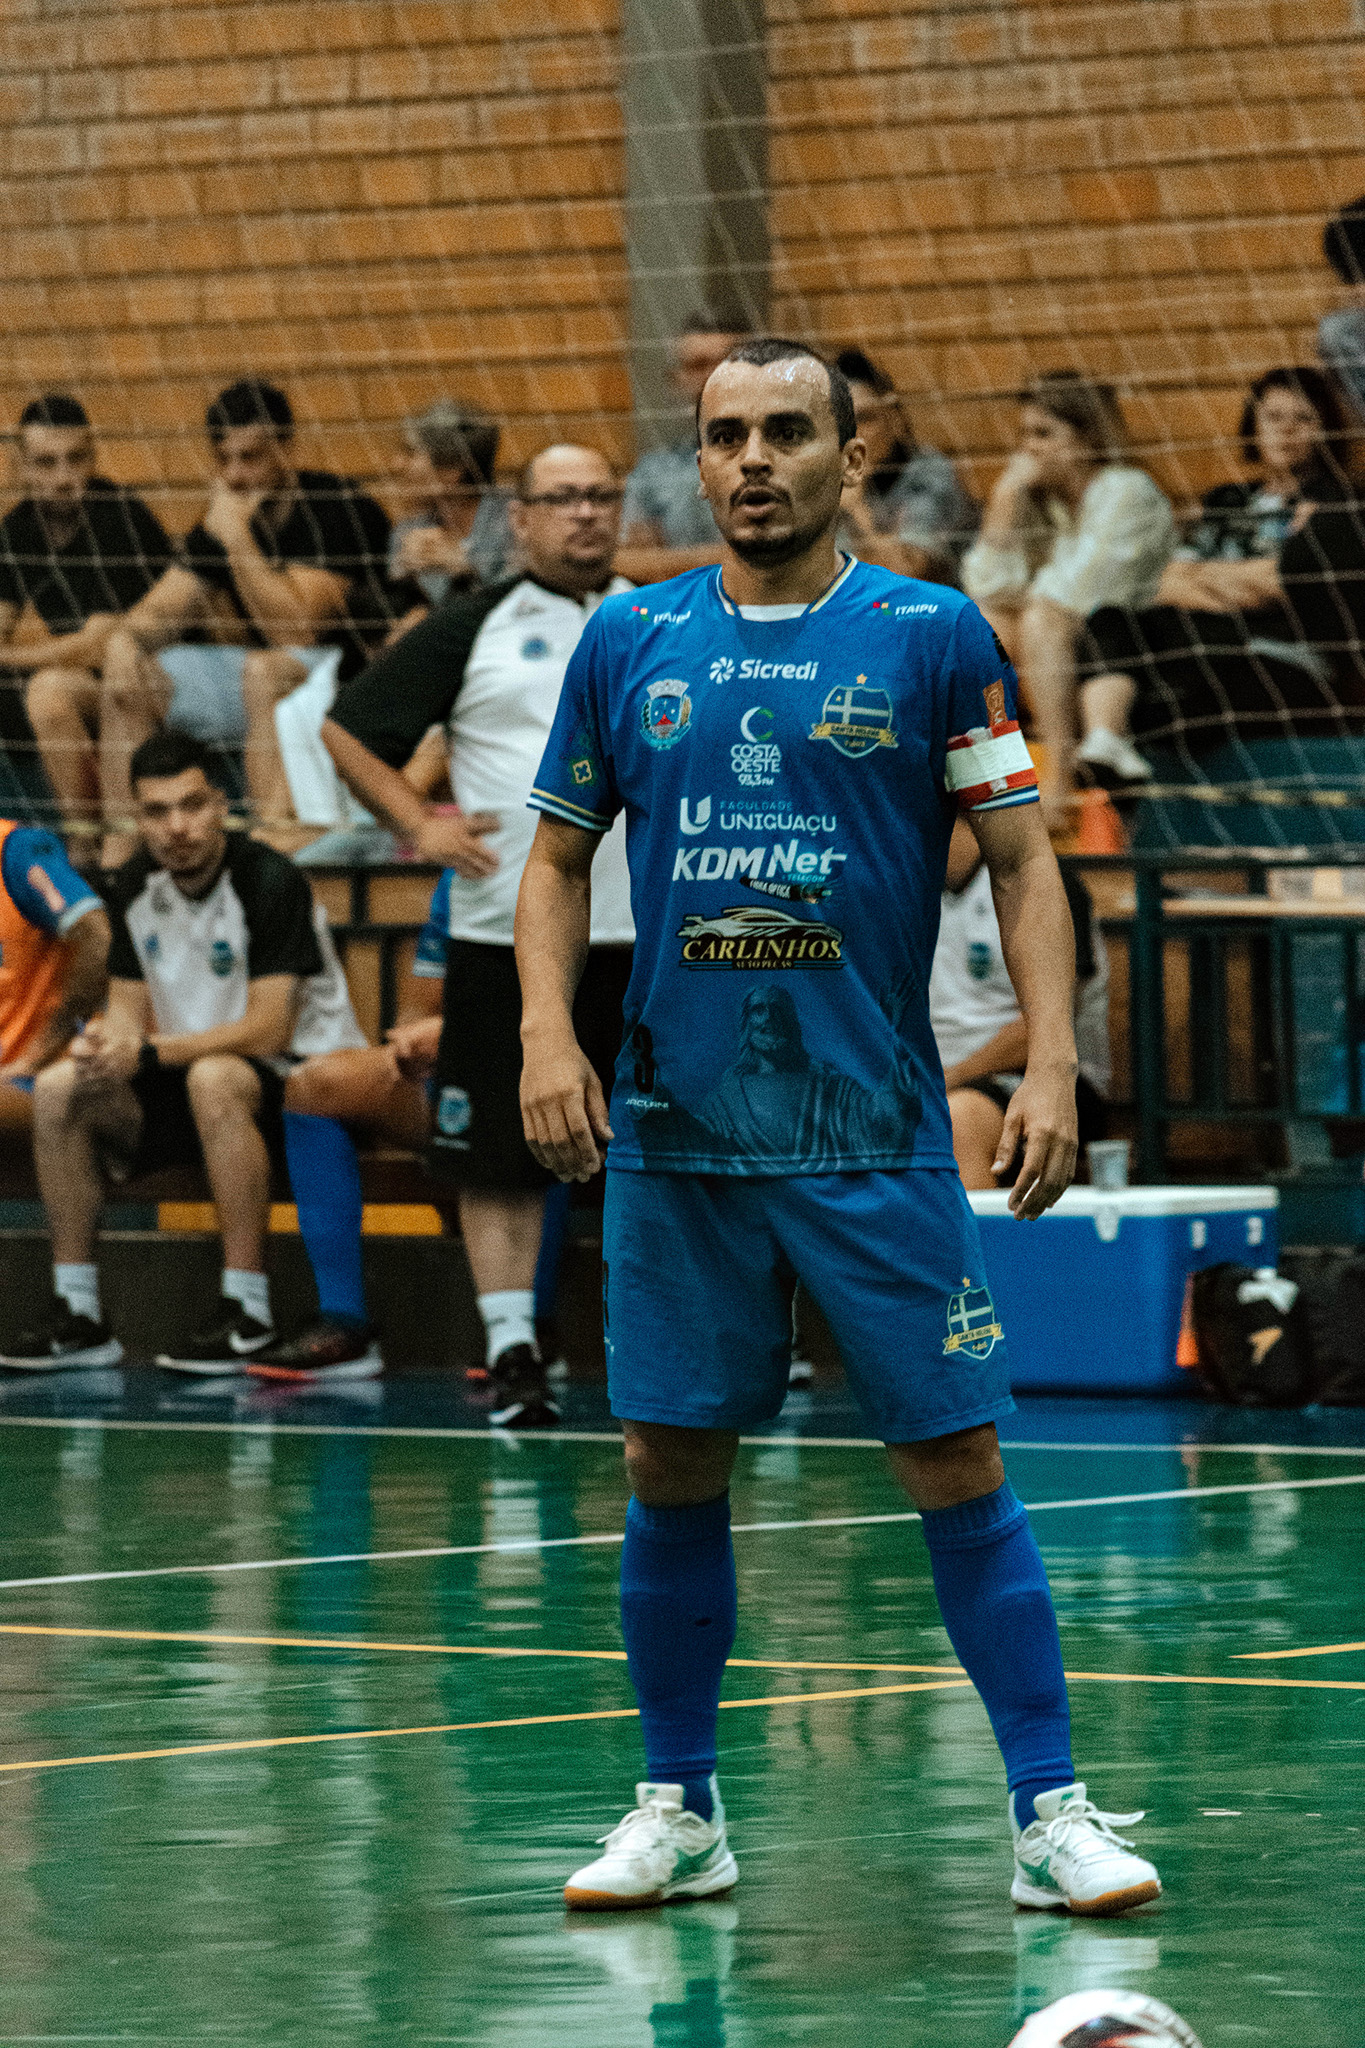 SH Futsal x Gralha